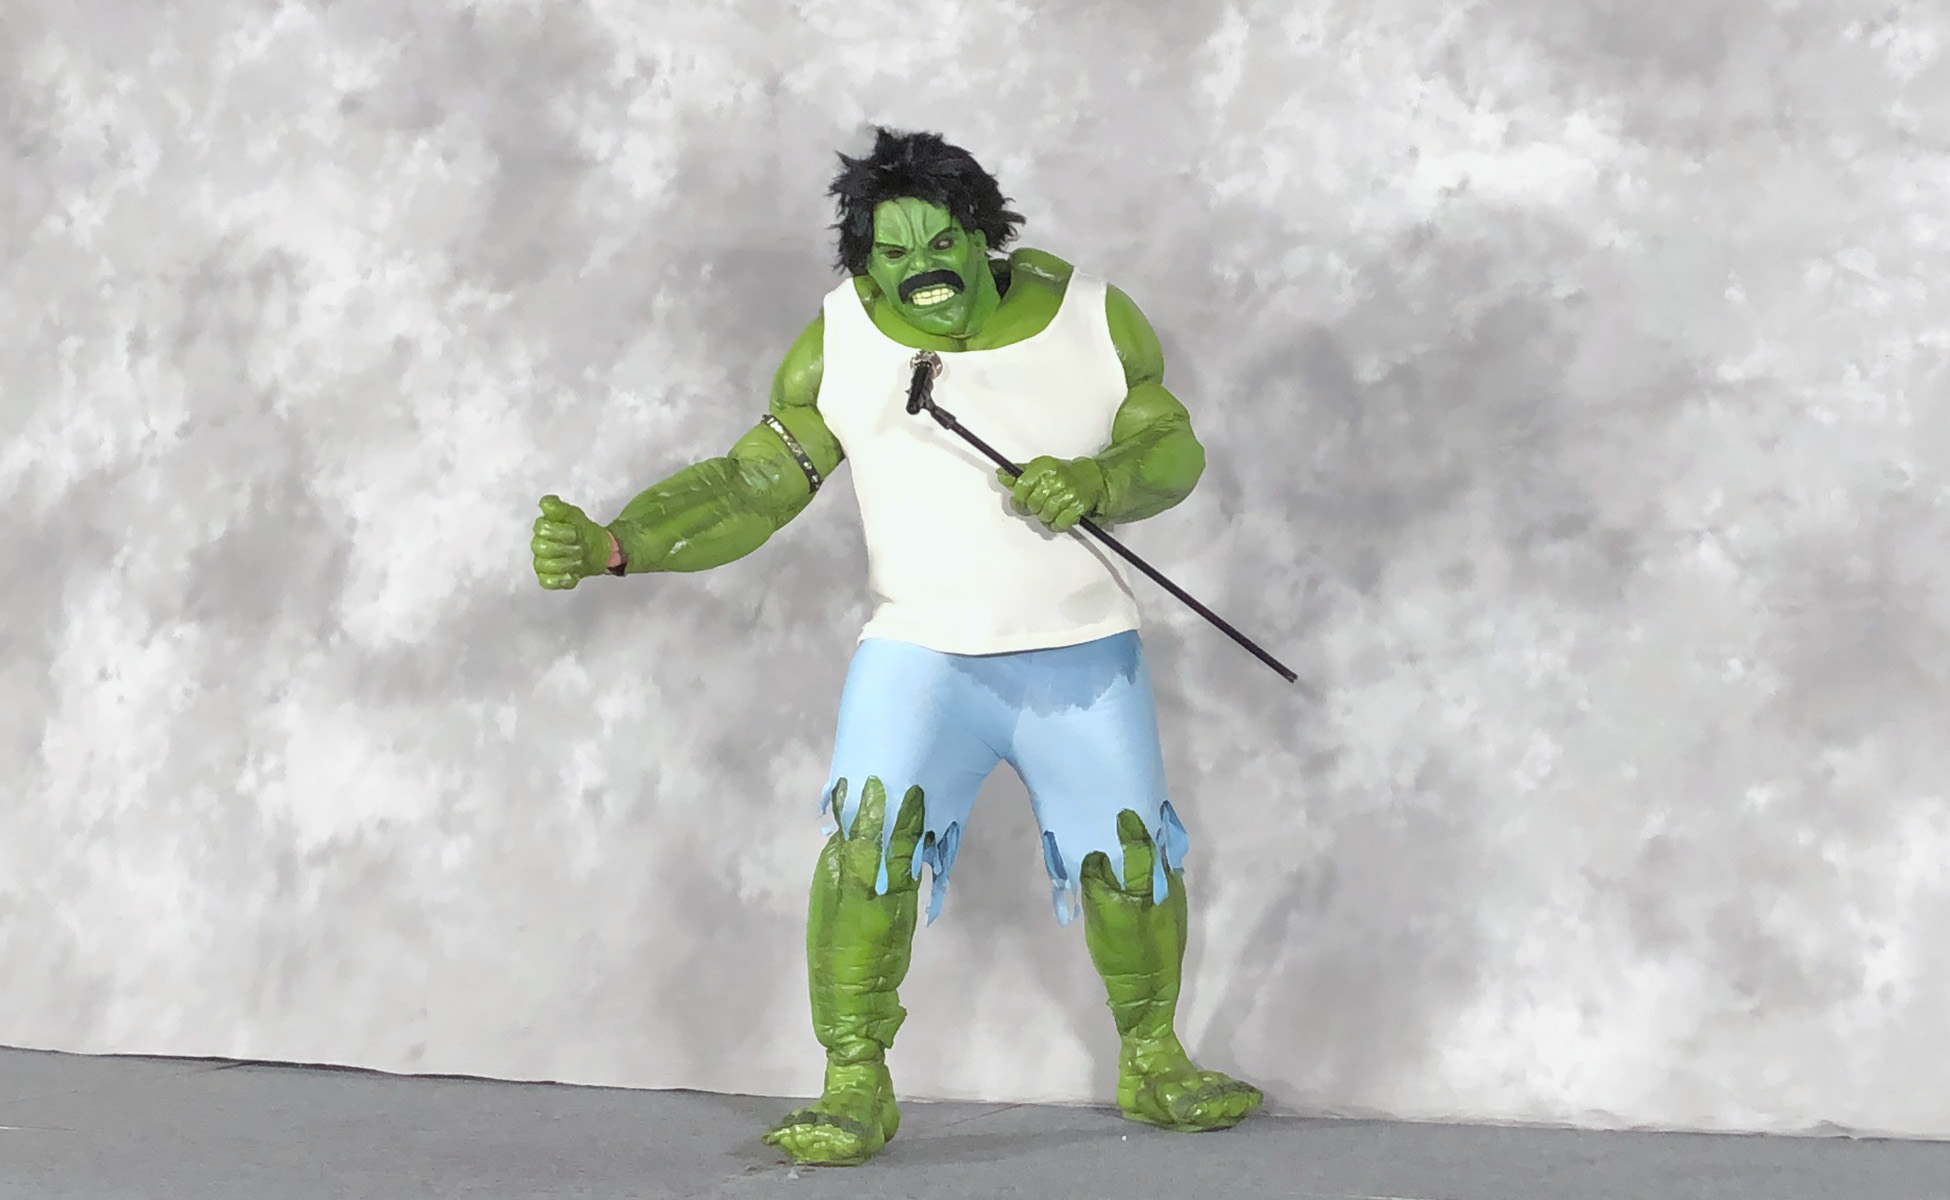 Incredible Hulk as Freddie Mercury by Greg Harris